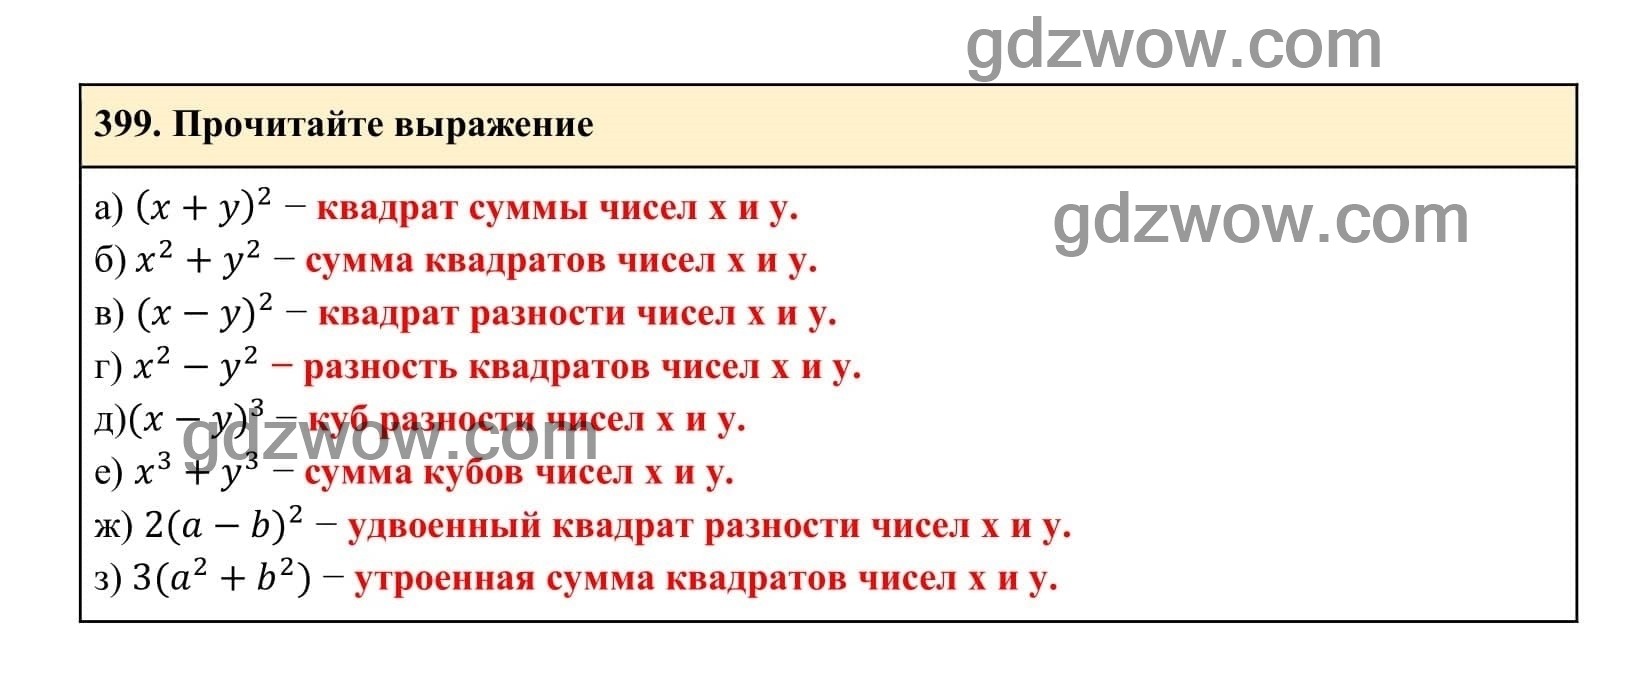 Упражнение 399 - ГДЗ по Алгебре 7 класс Учебник Макарычев (решебник) - GDZwow